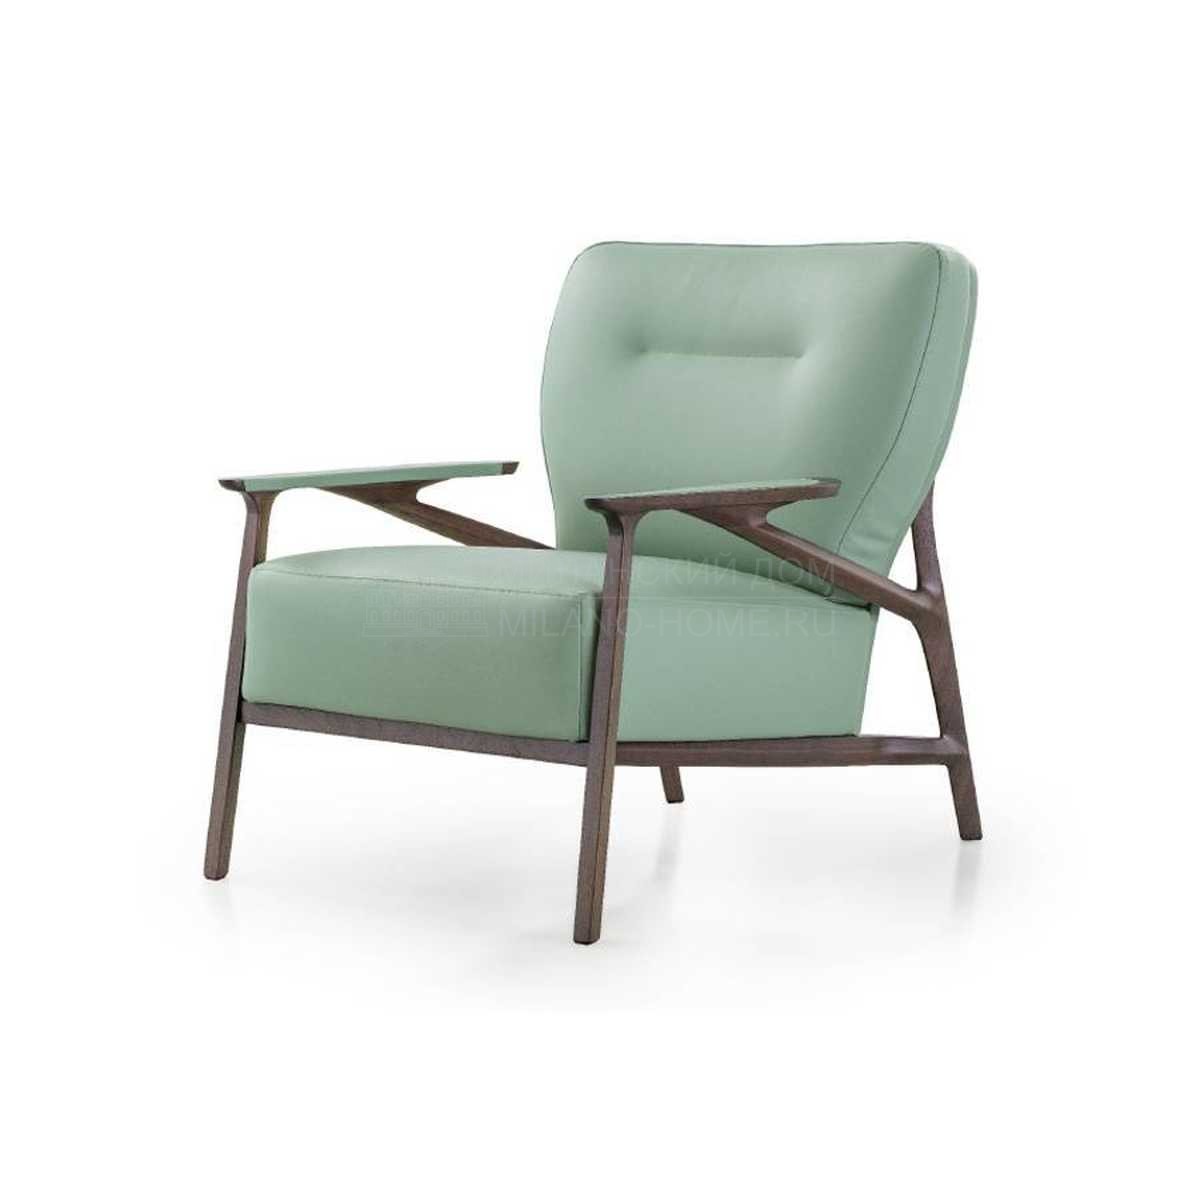 Кожаное кресло Vine leather armchair из Италии фабрики TURRI